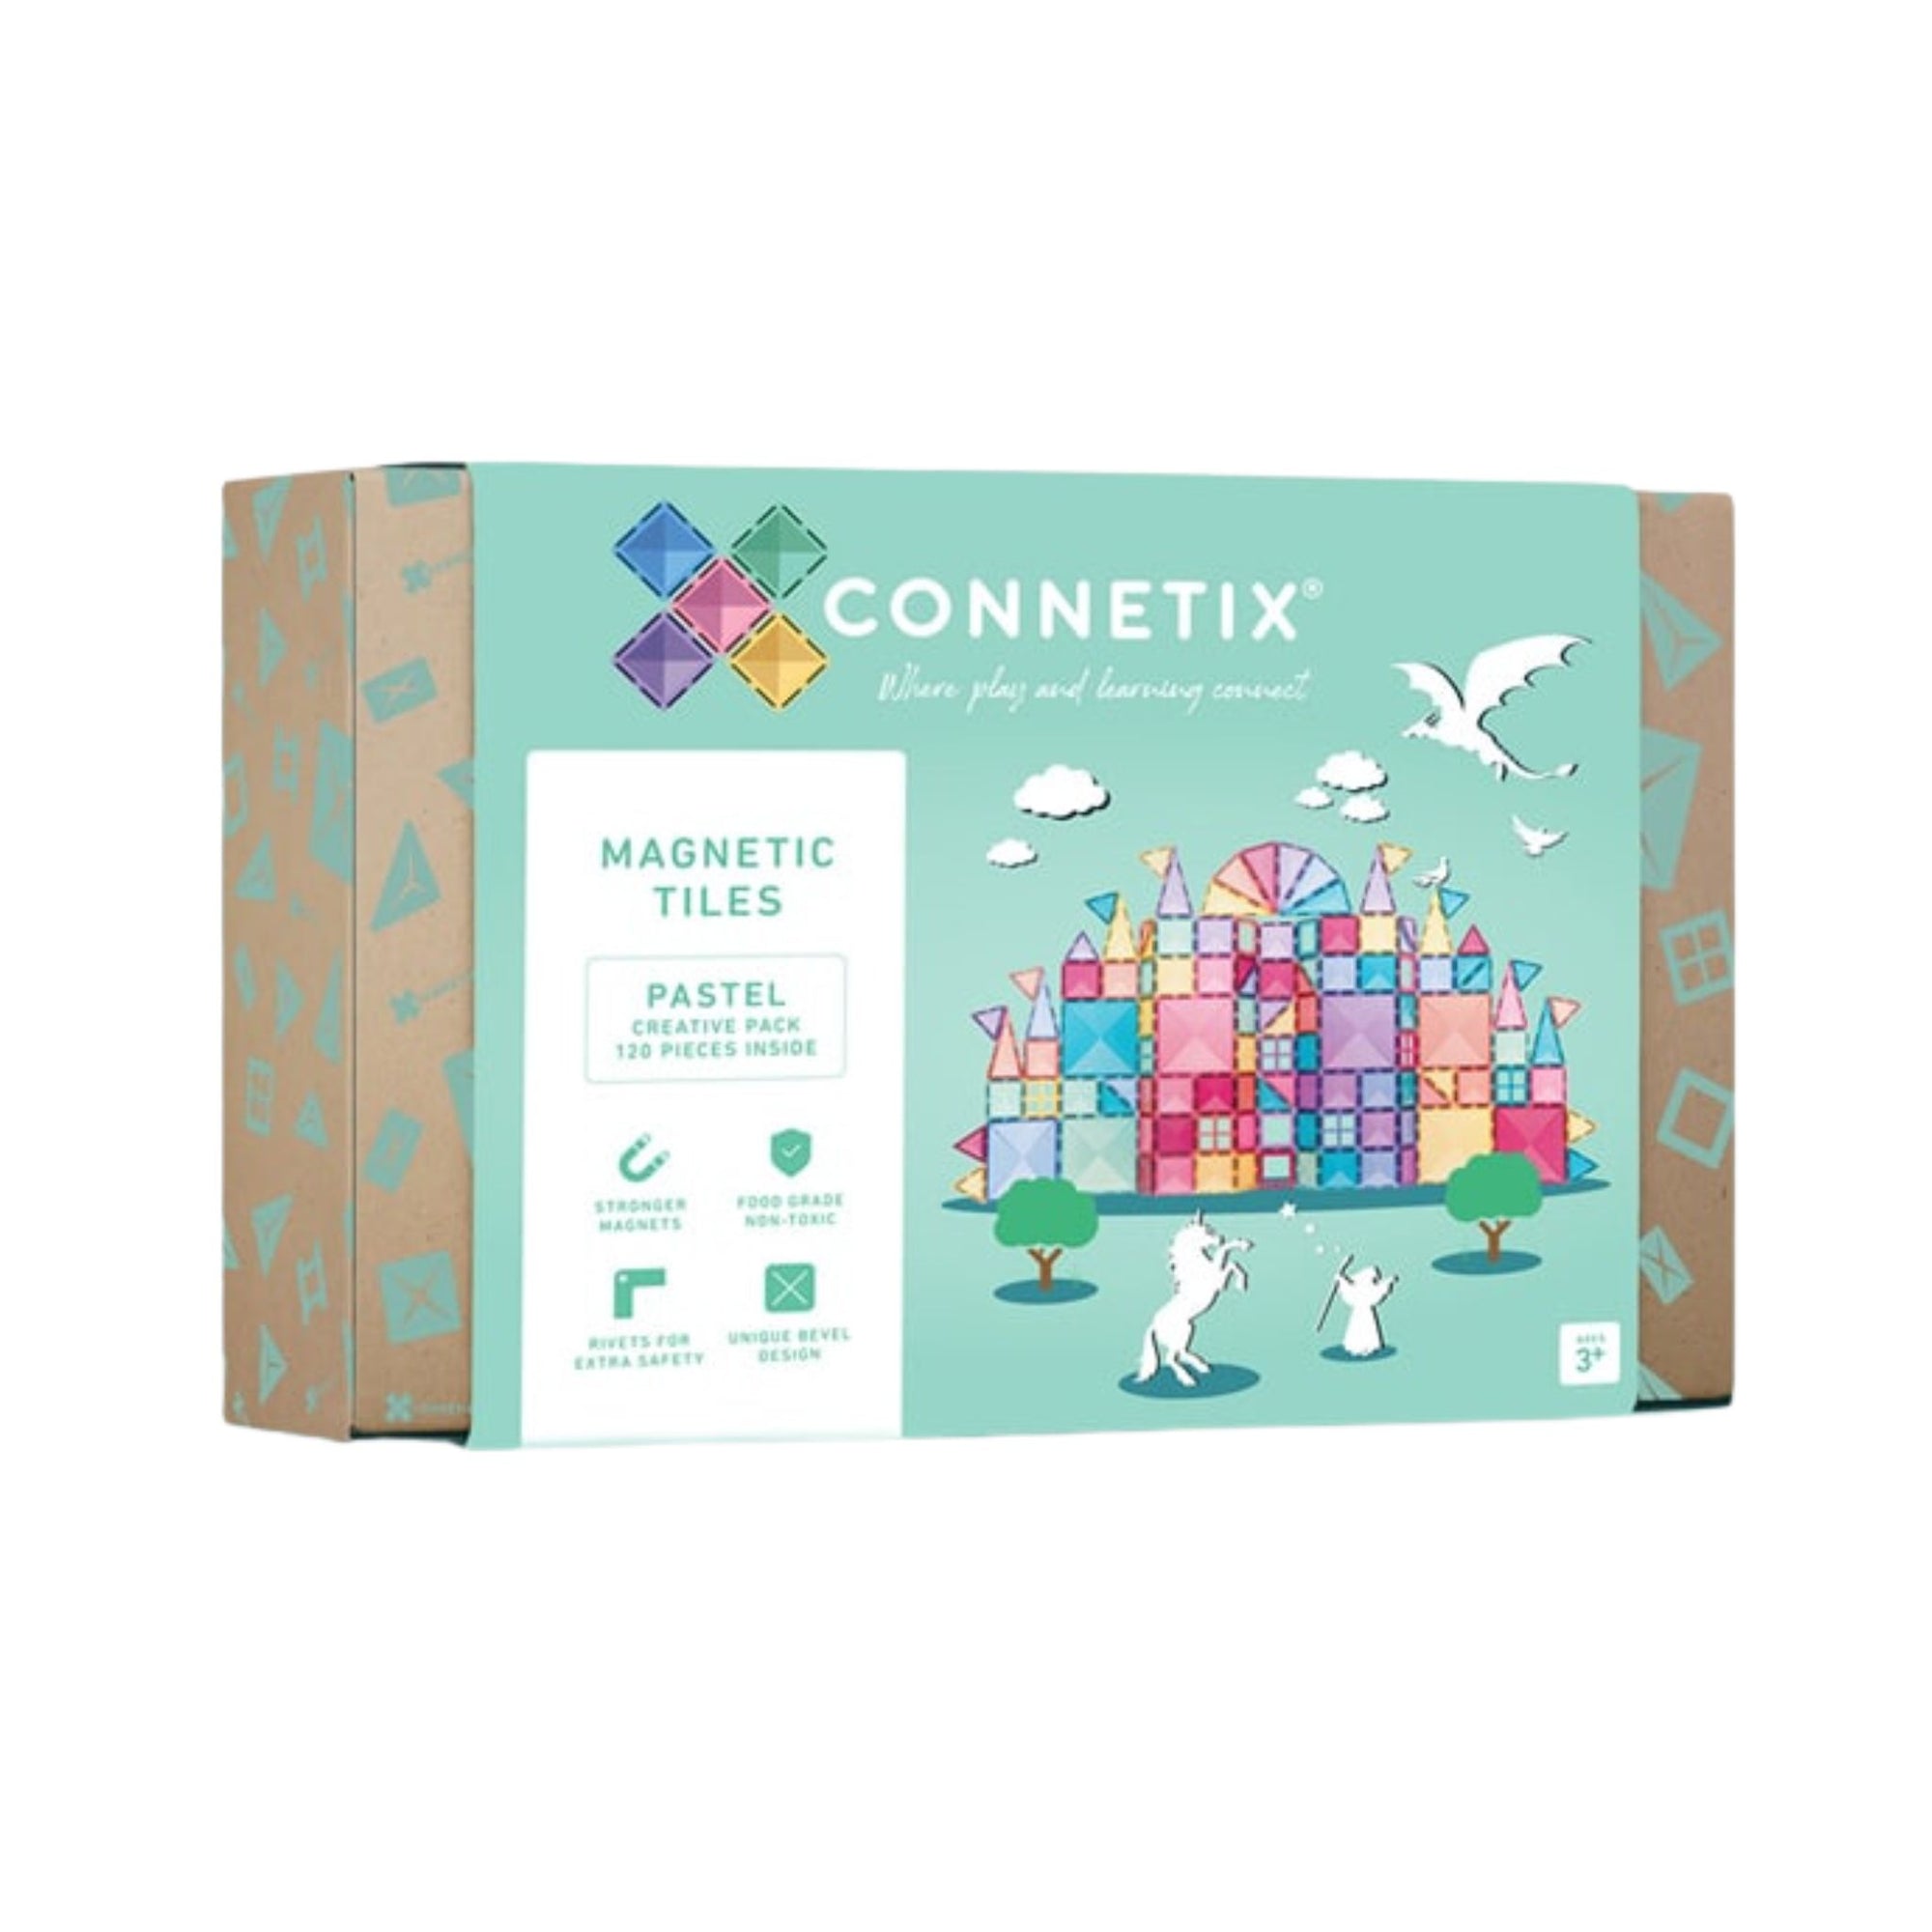 Connetix 120 piece Pastel Creative Pack